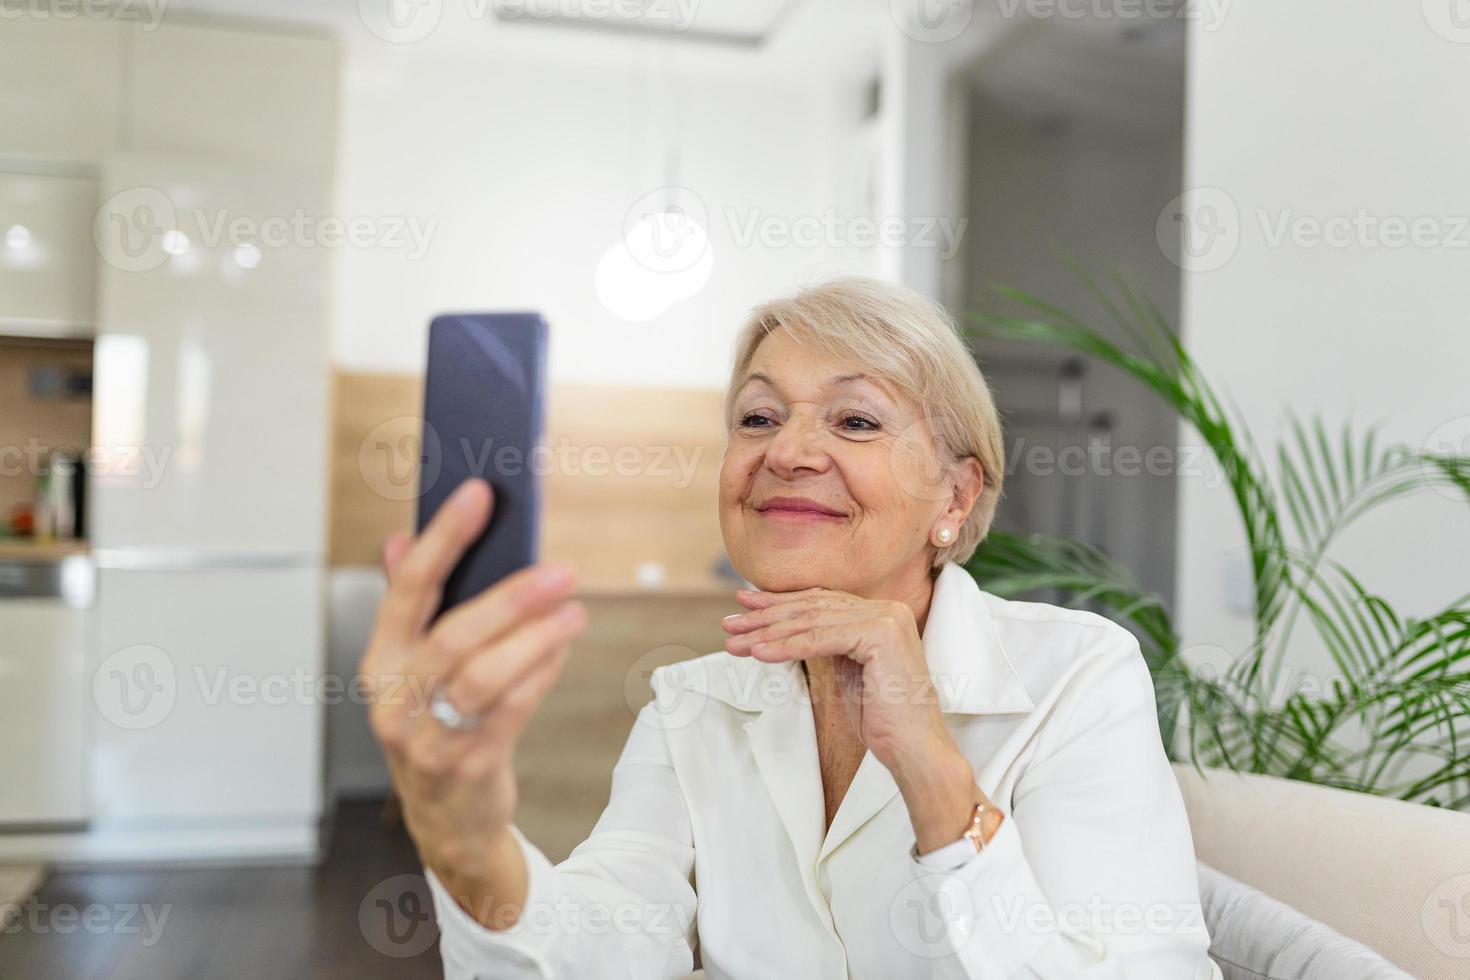 grootmoeder nemen selfies Bij huis in de huiskamer. dichtbij omhoog portret van gelukkig vrolijk verrukkelijk charmant mooi ouderen dame oma grootmoeder nemen een selfie. oude leeftijd, pensioen en mensen concept foto